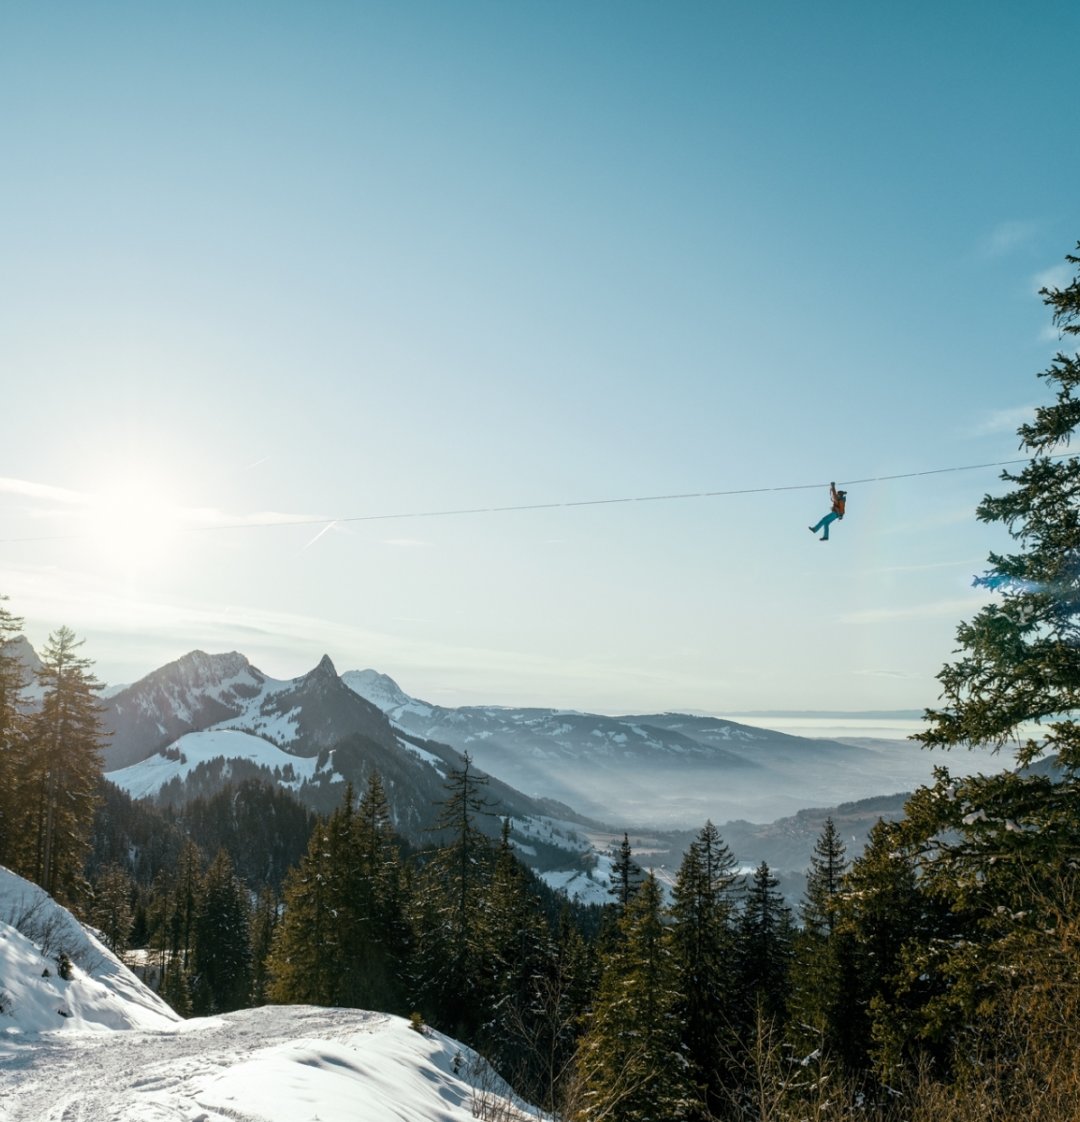 Mensch an Zipline von Charmey vor Wald und Felsen mit Schnee. Im Hintergrund: Moléson.